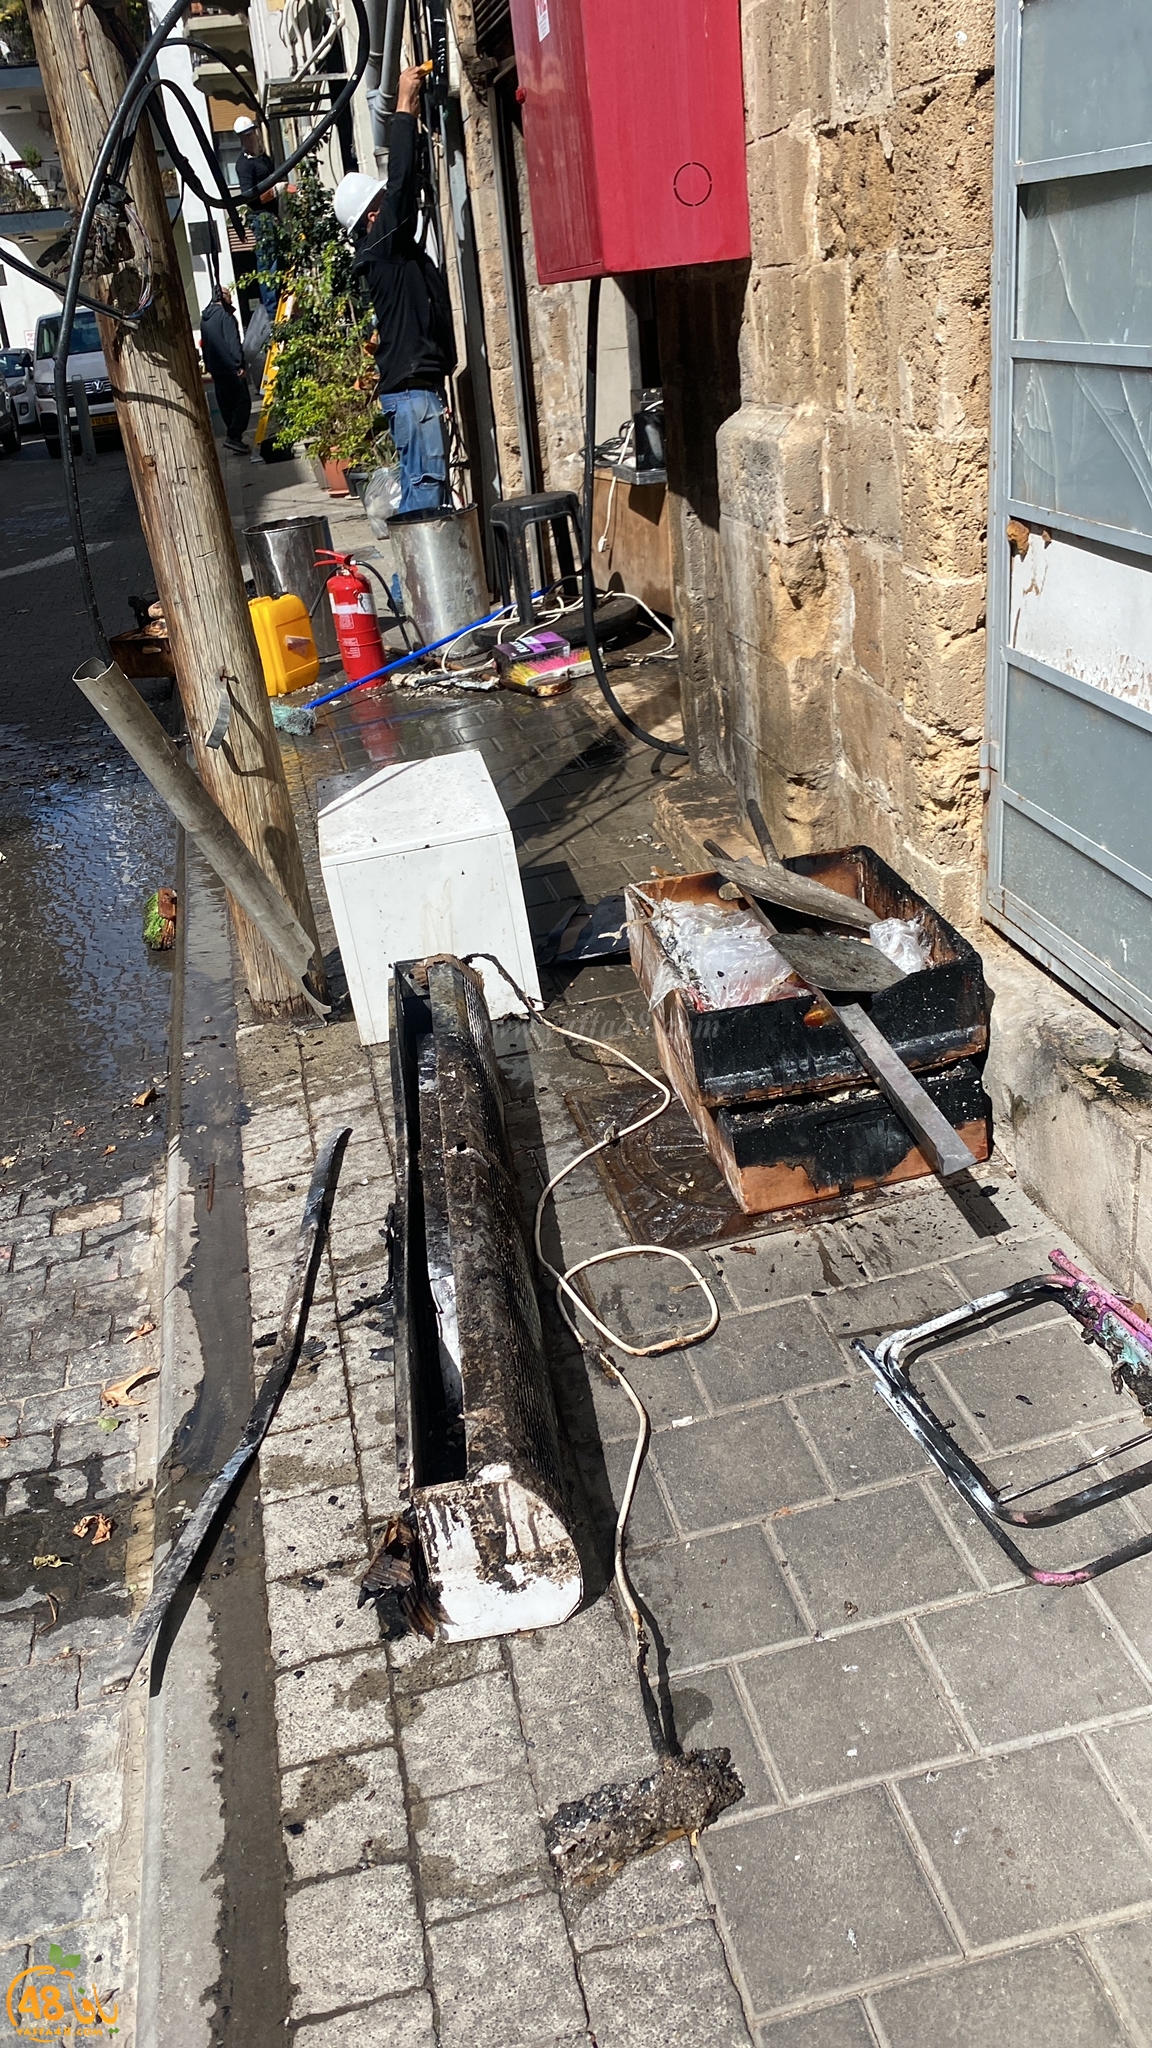  يافا: حريق يُخلف أضراراً جسيمة داخل أحد المخابز 